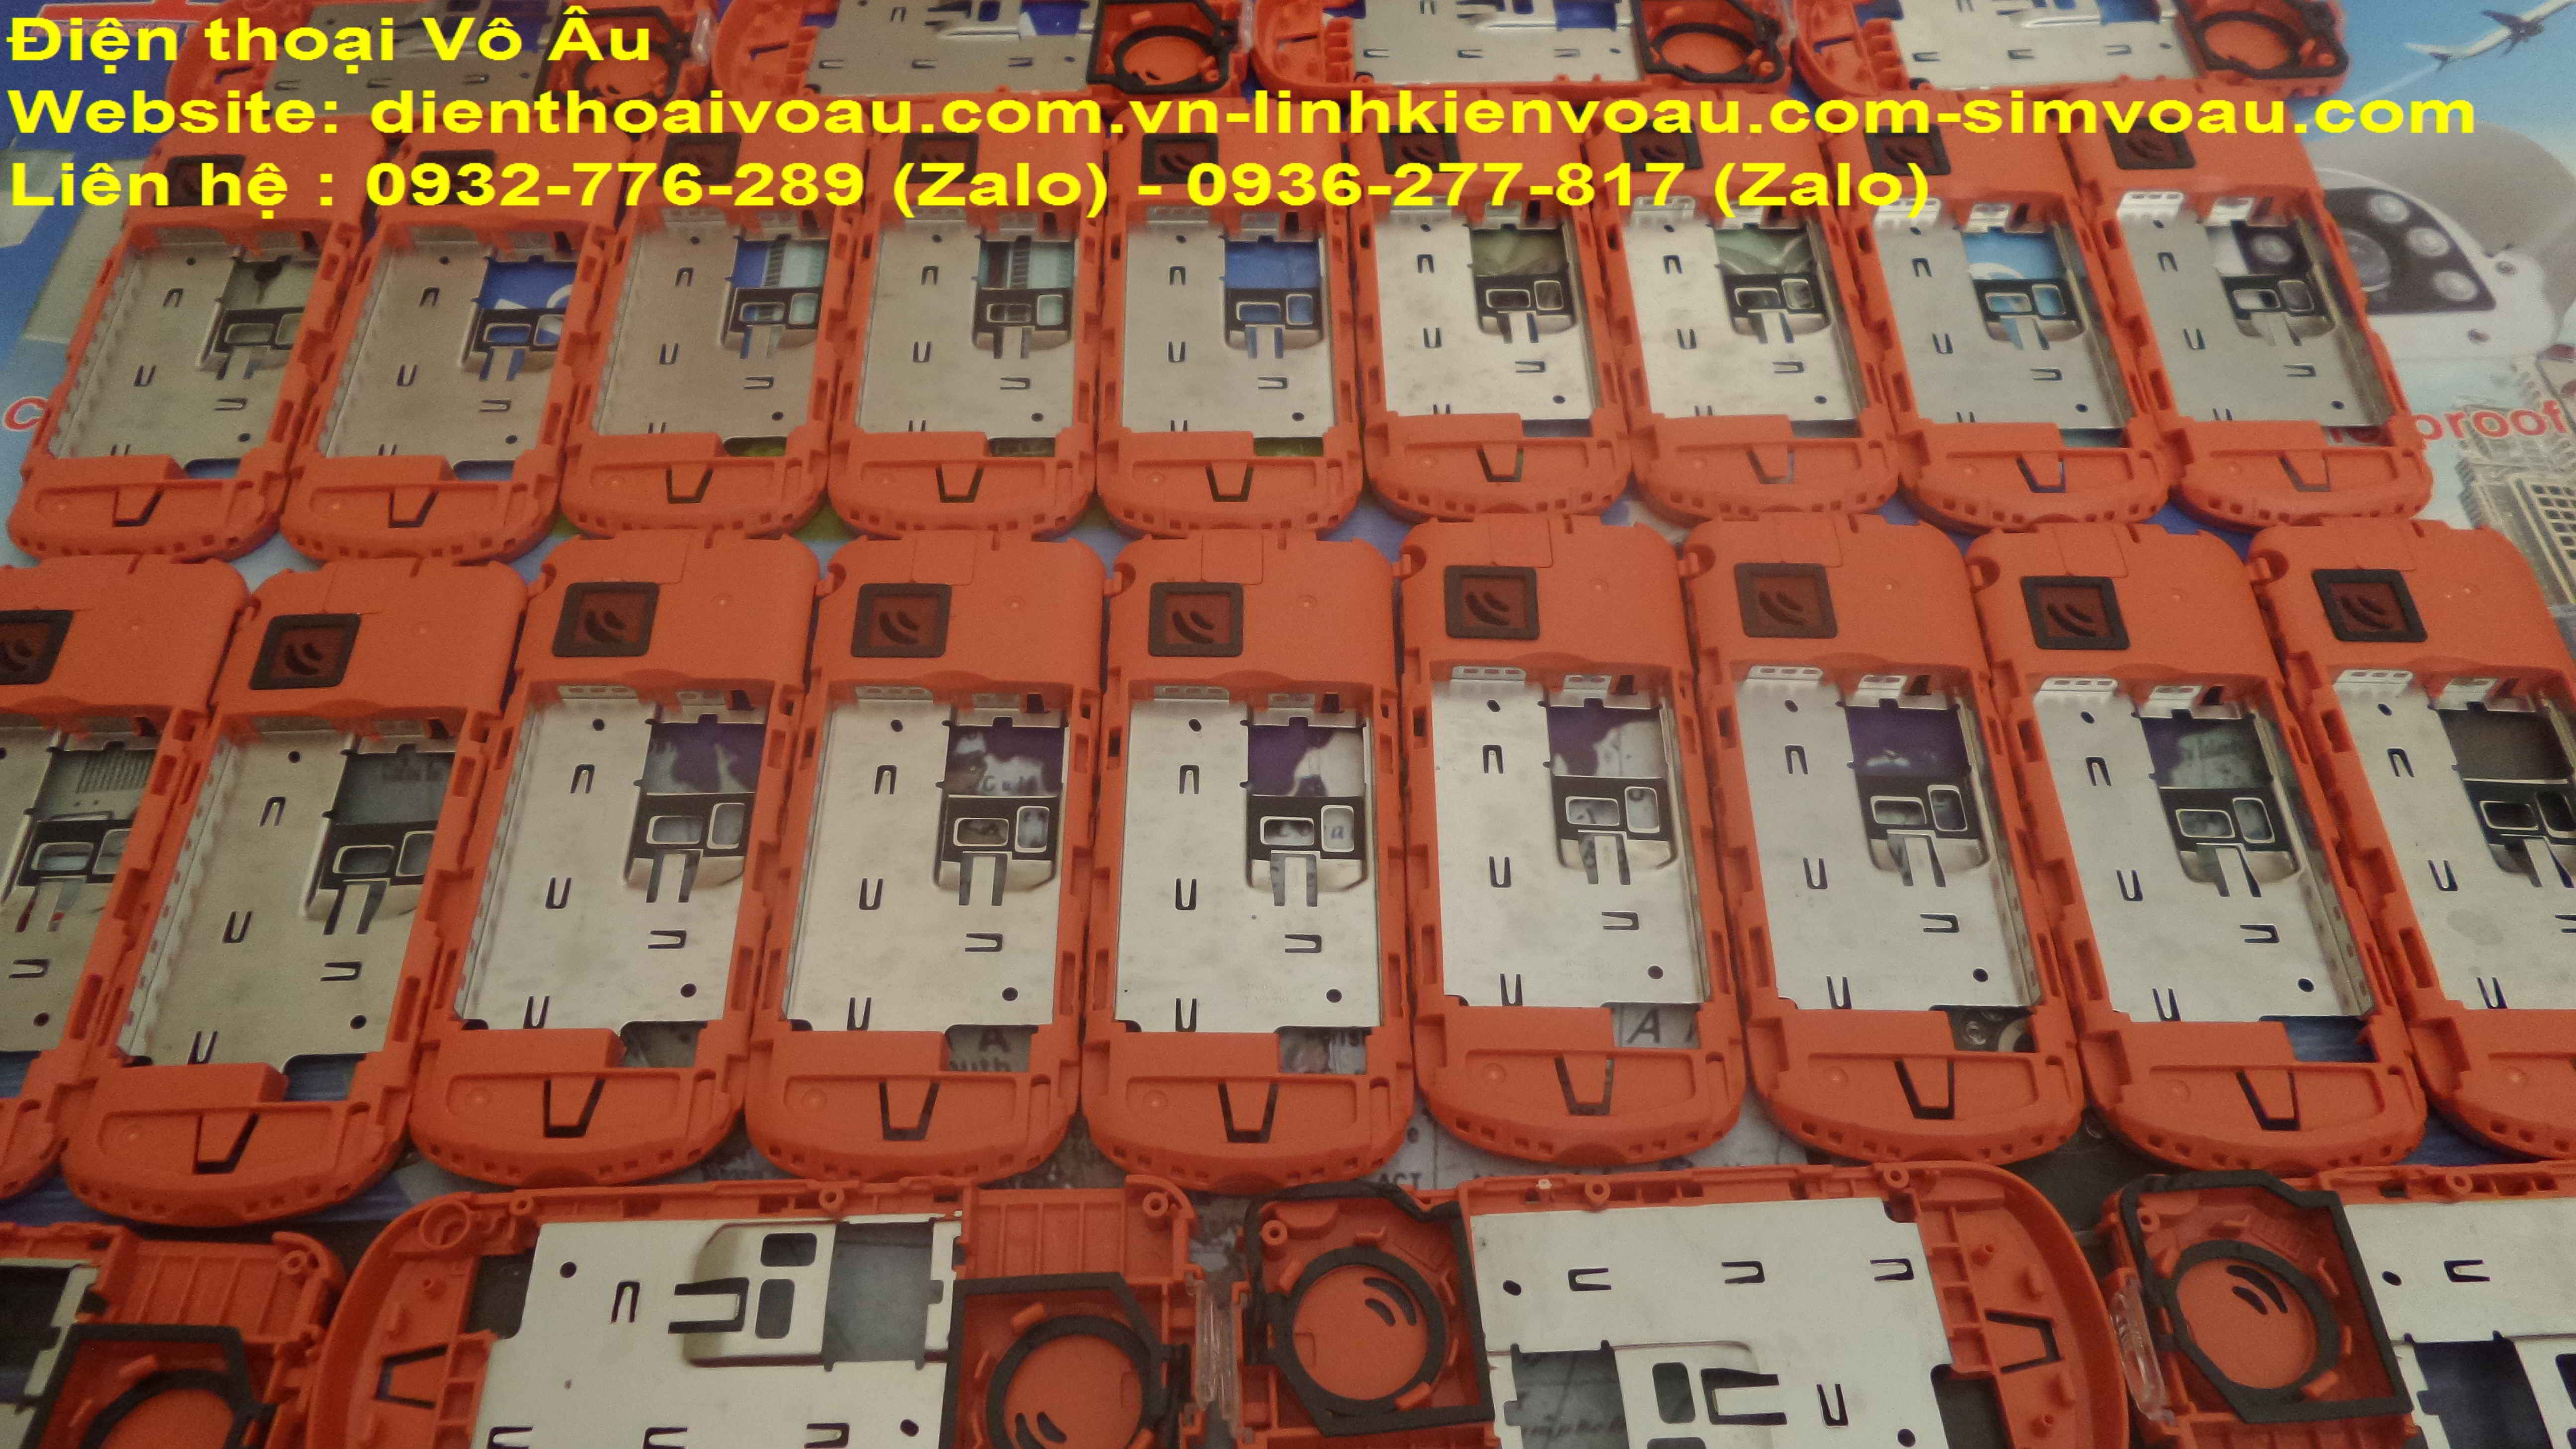 Chuyên phân phối và cung cấp nokia 1280 chính hãng giá rẻ nhất Sài Gòn - 24